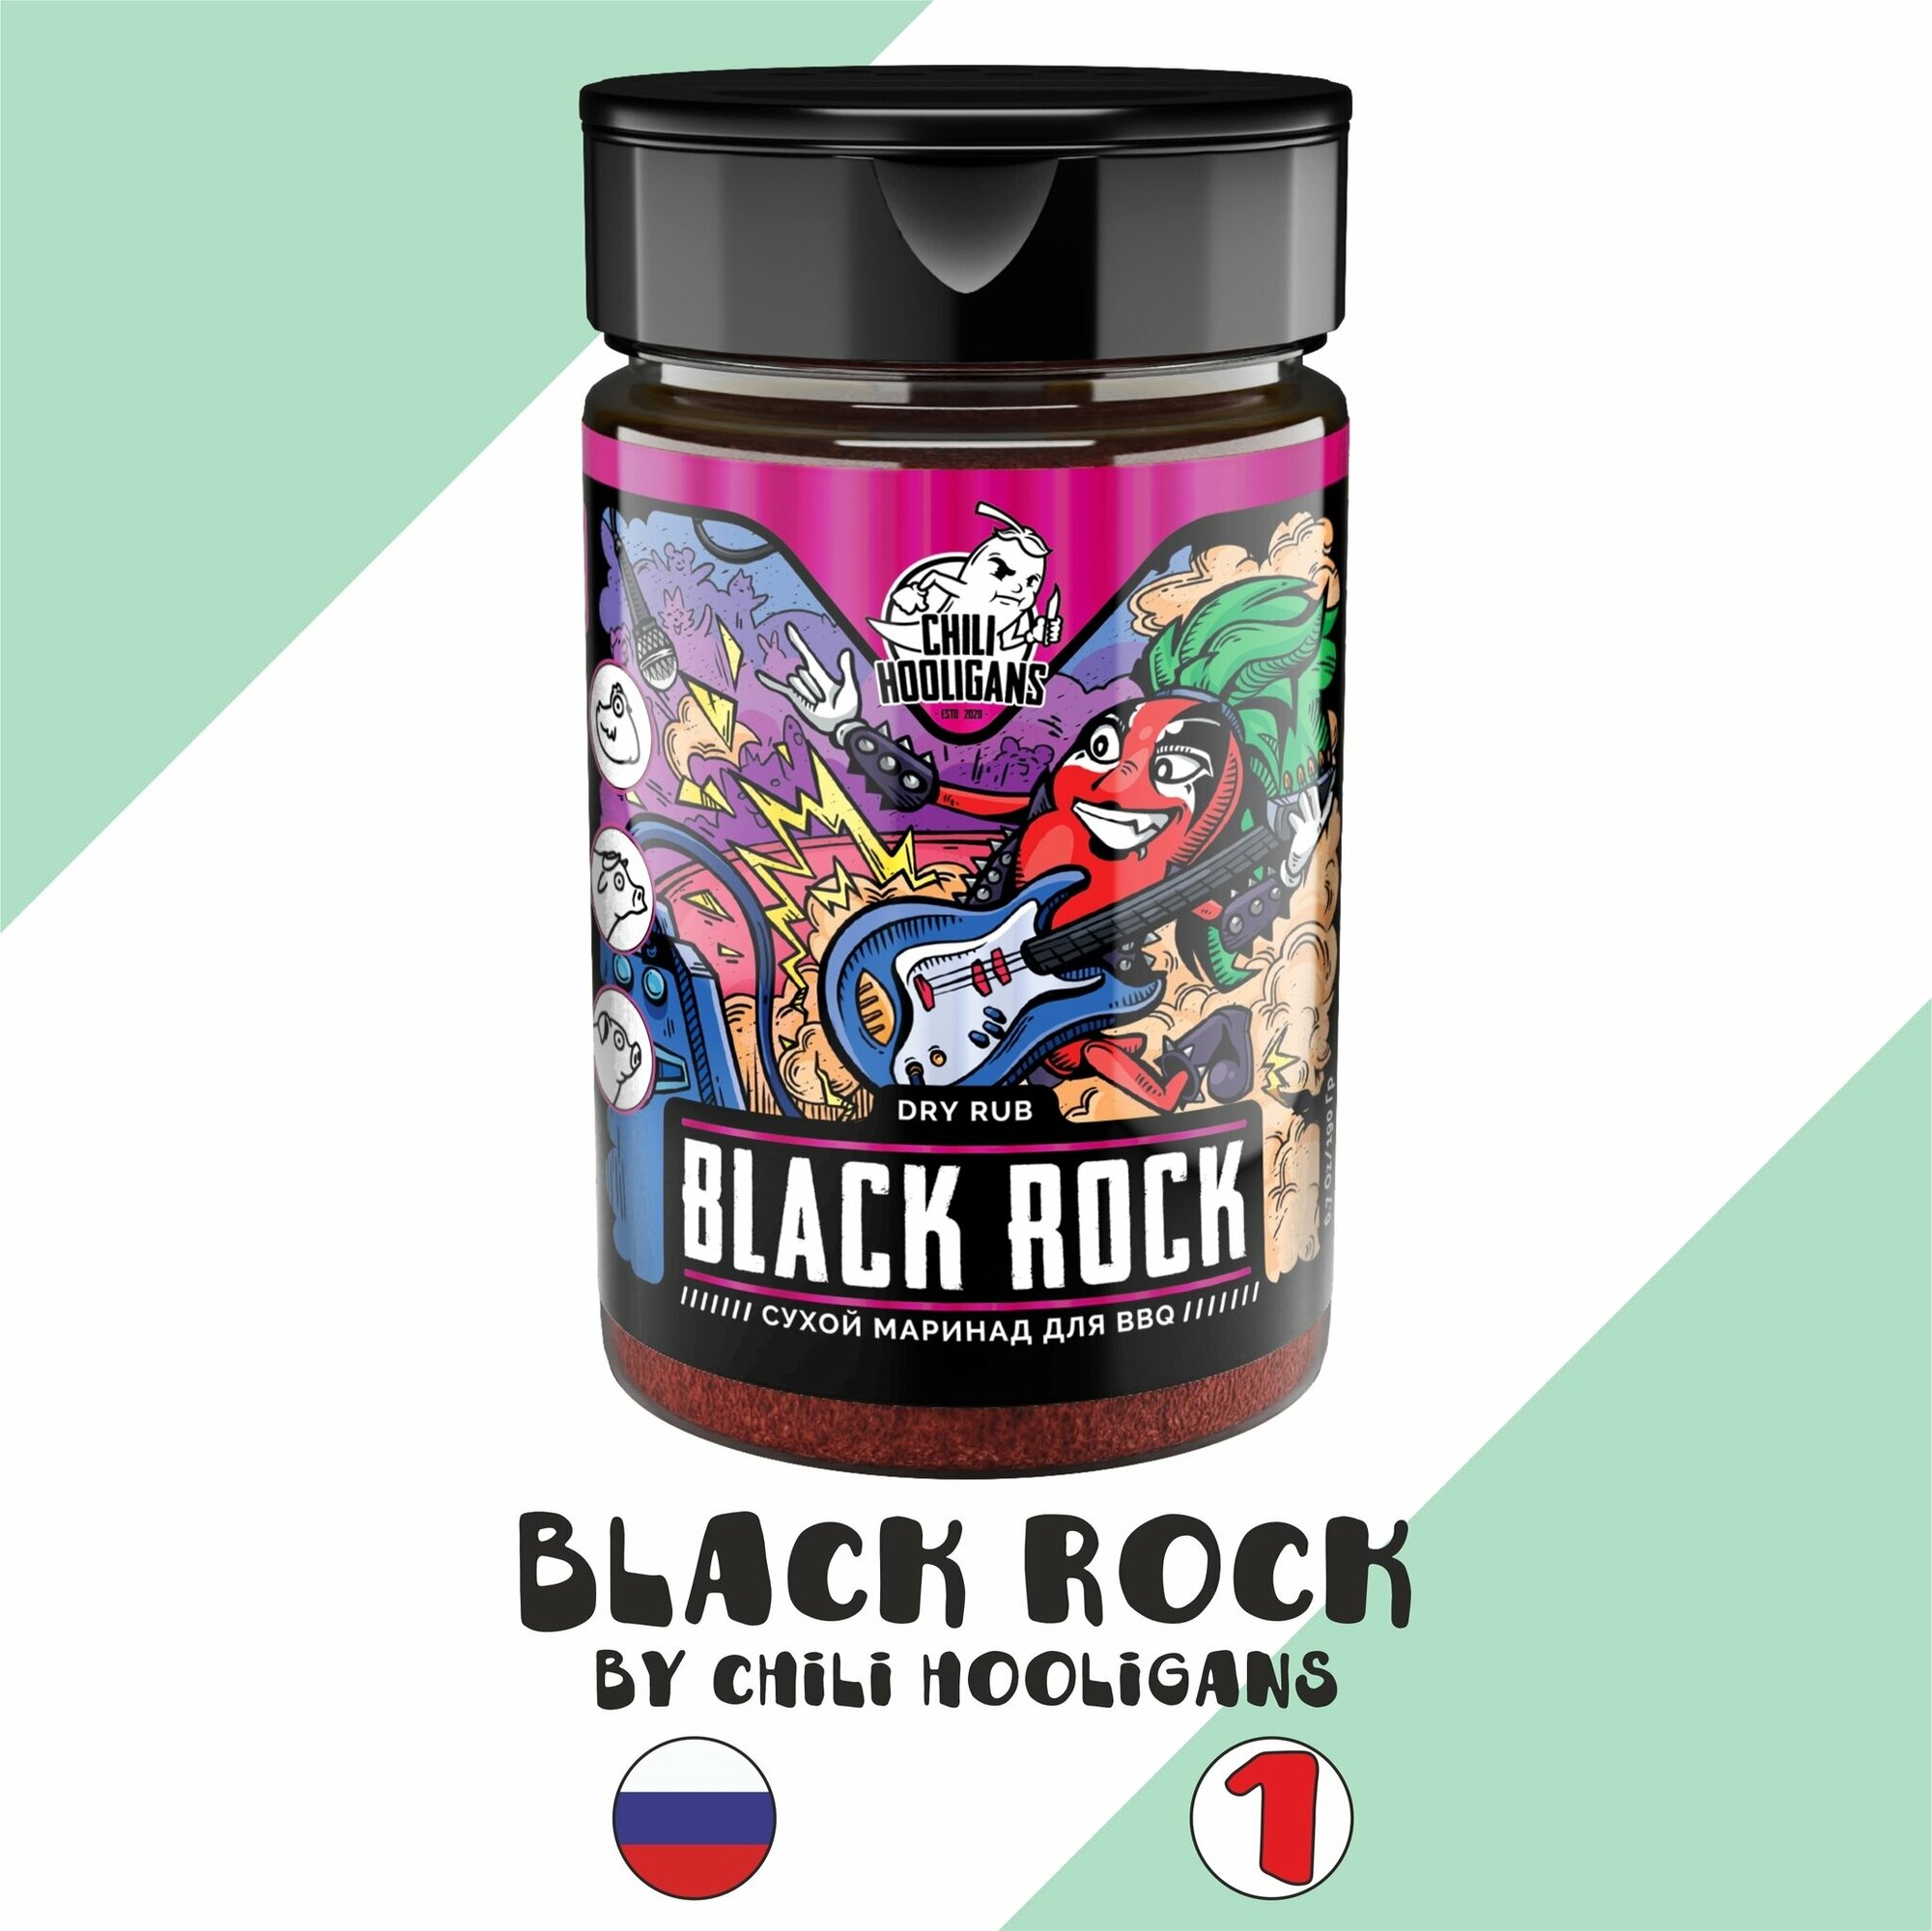 Сухой маринад Chili hooligans "Black rock/Черная скала" (Чили Хулиганс)с перцем Чили